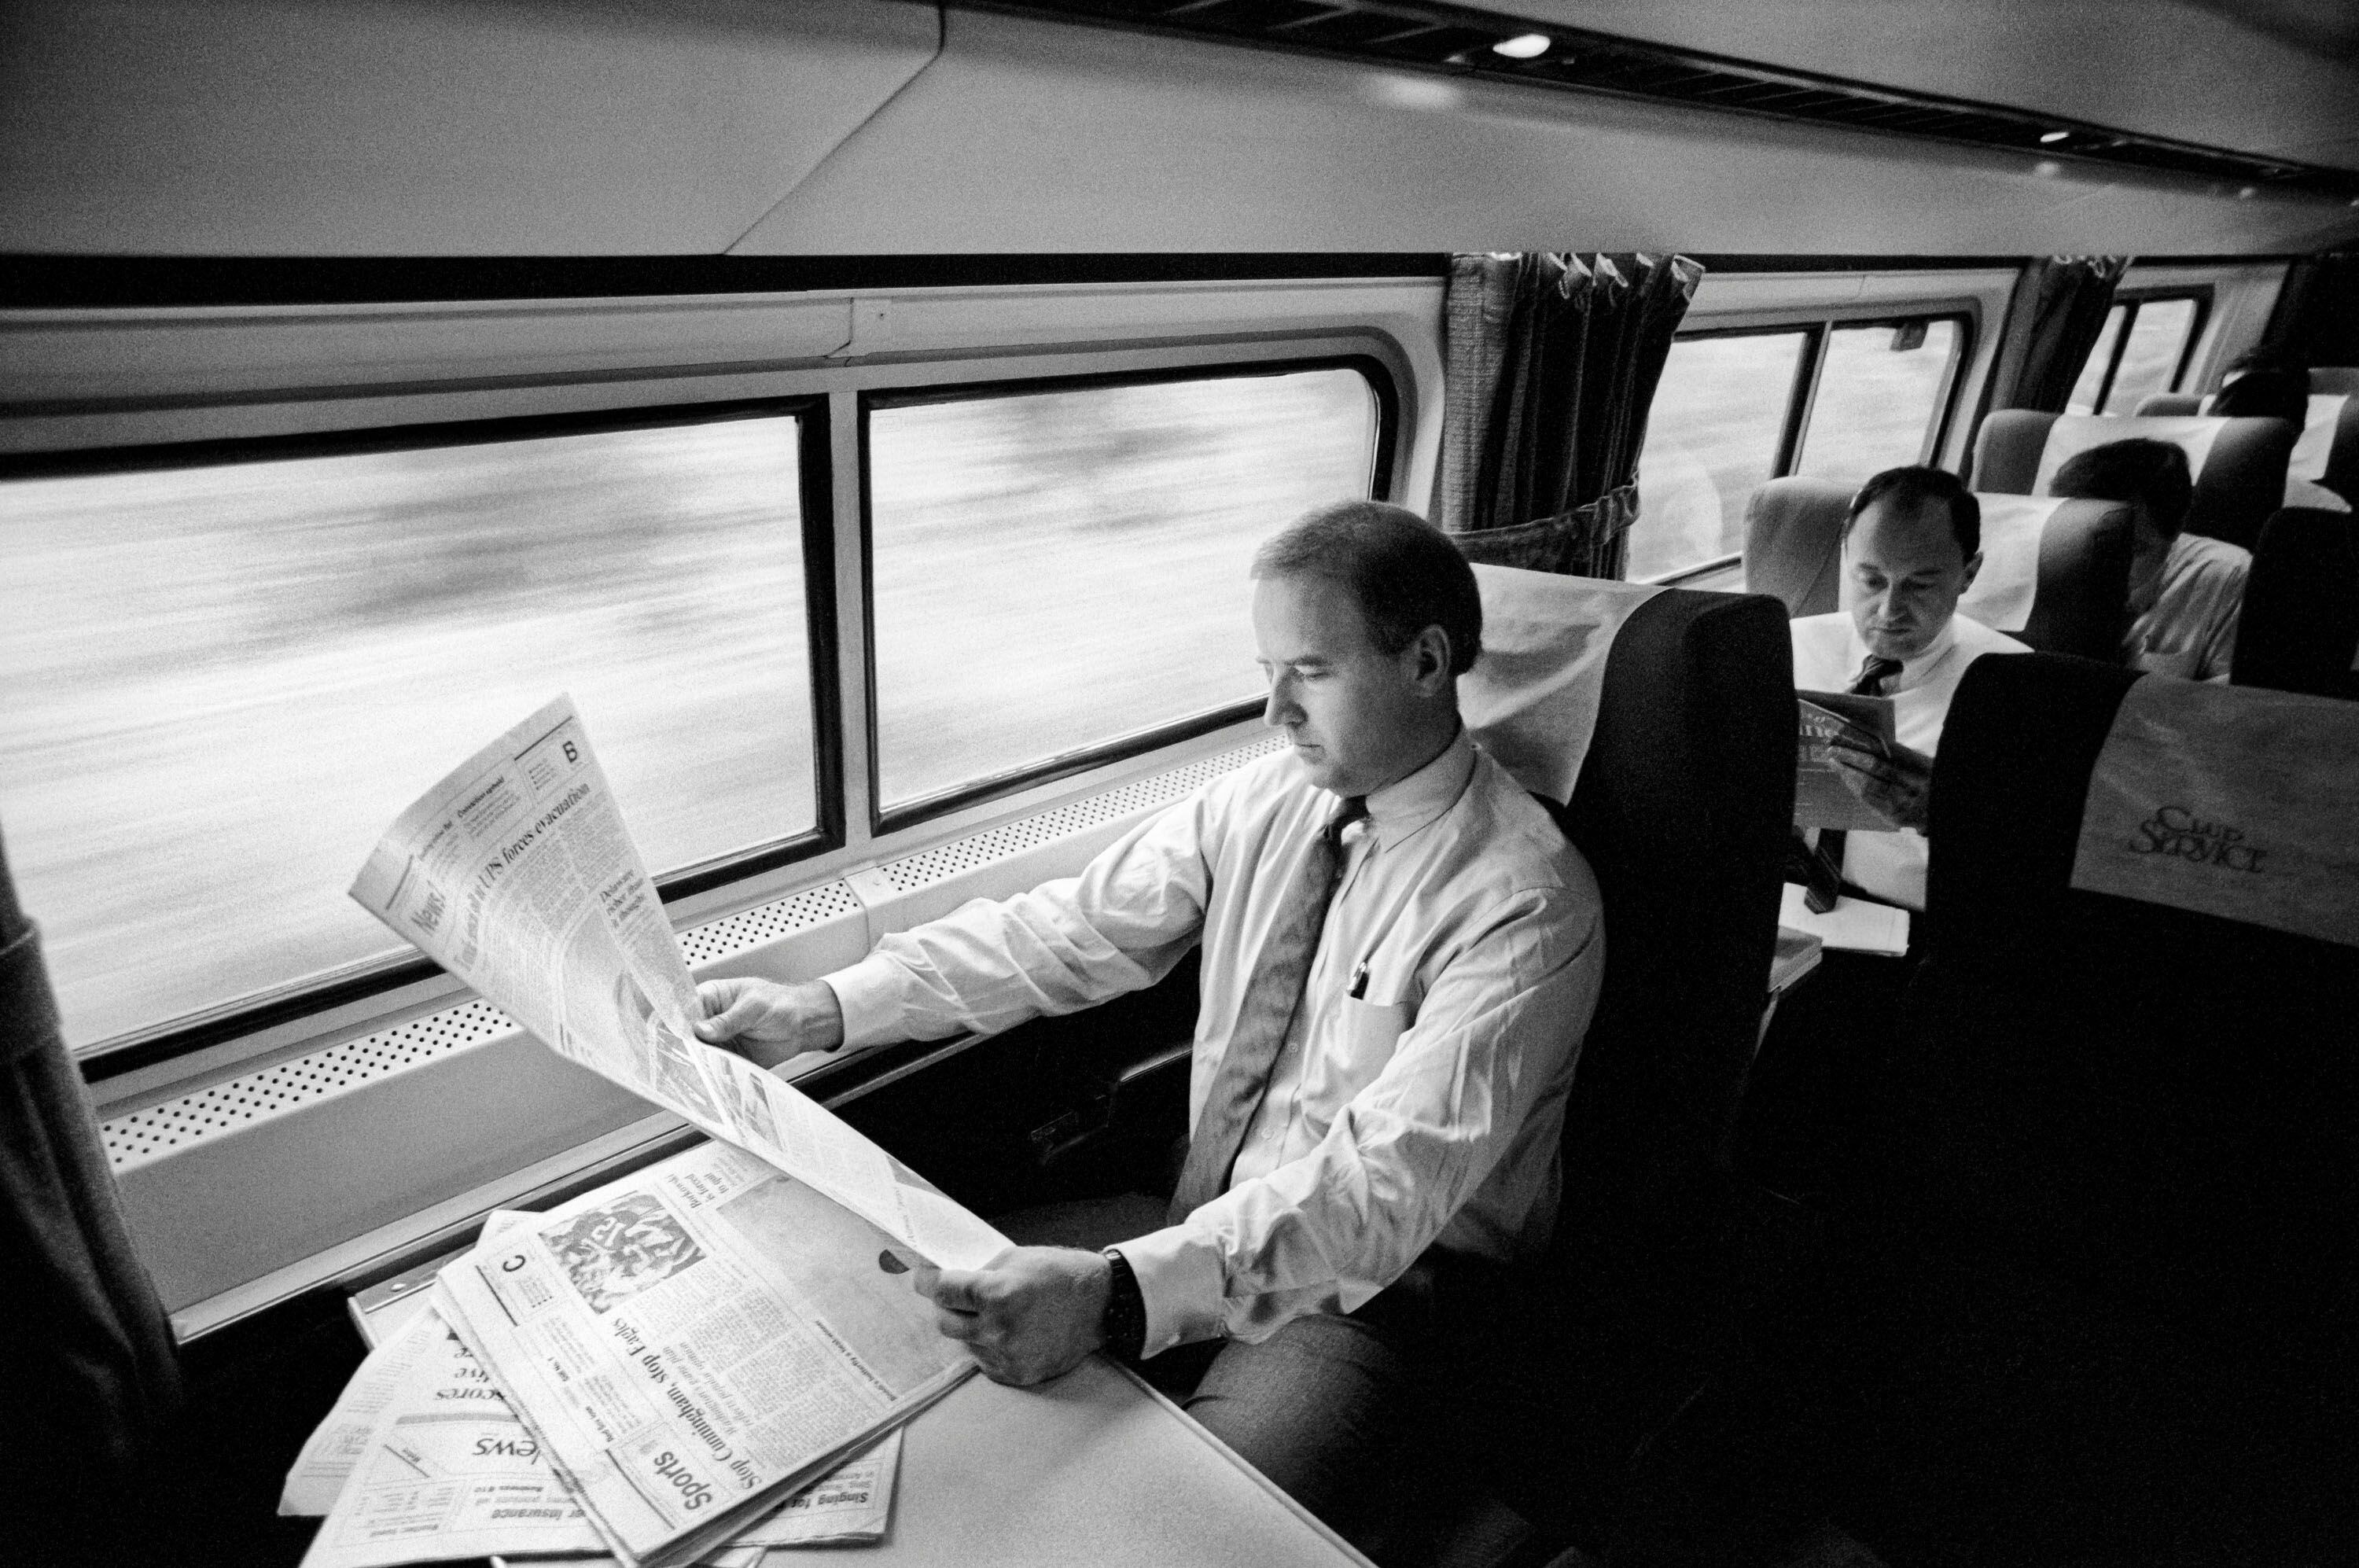 Durante anos, Biden viajou de trem de sua casa em Wilmington a Washington, a uma hora e meia de distância. O então senador em uma imagem de setembro de 1988.  